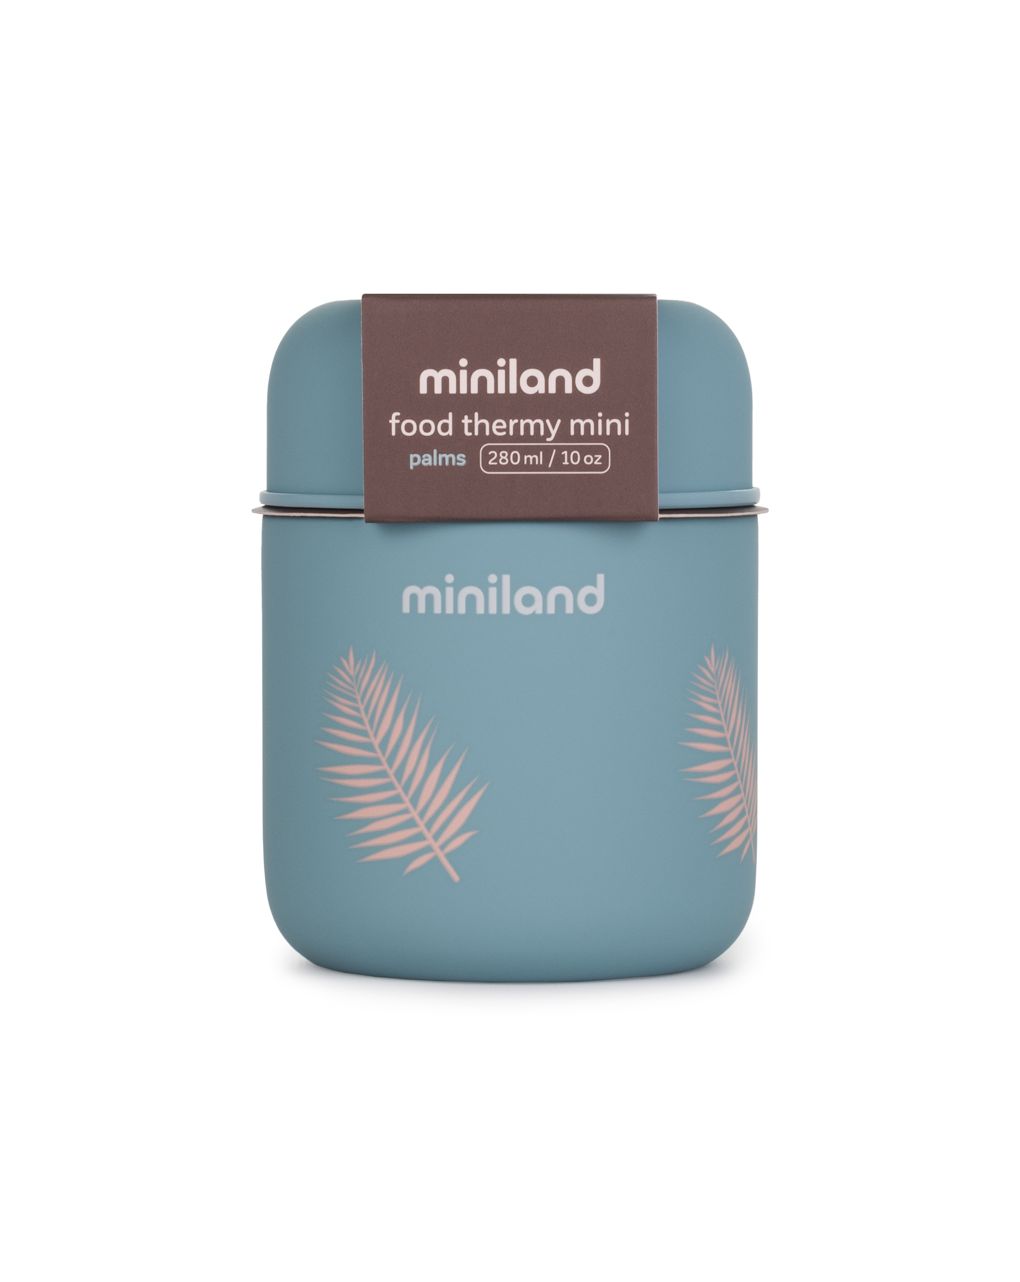 Miniland ανοξείδωτος θερμός φαγητού terra food mini palms 280ml - Miniland